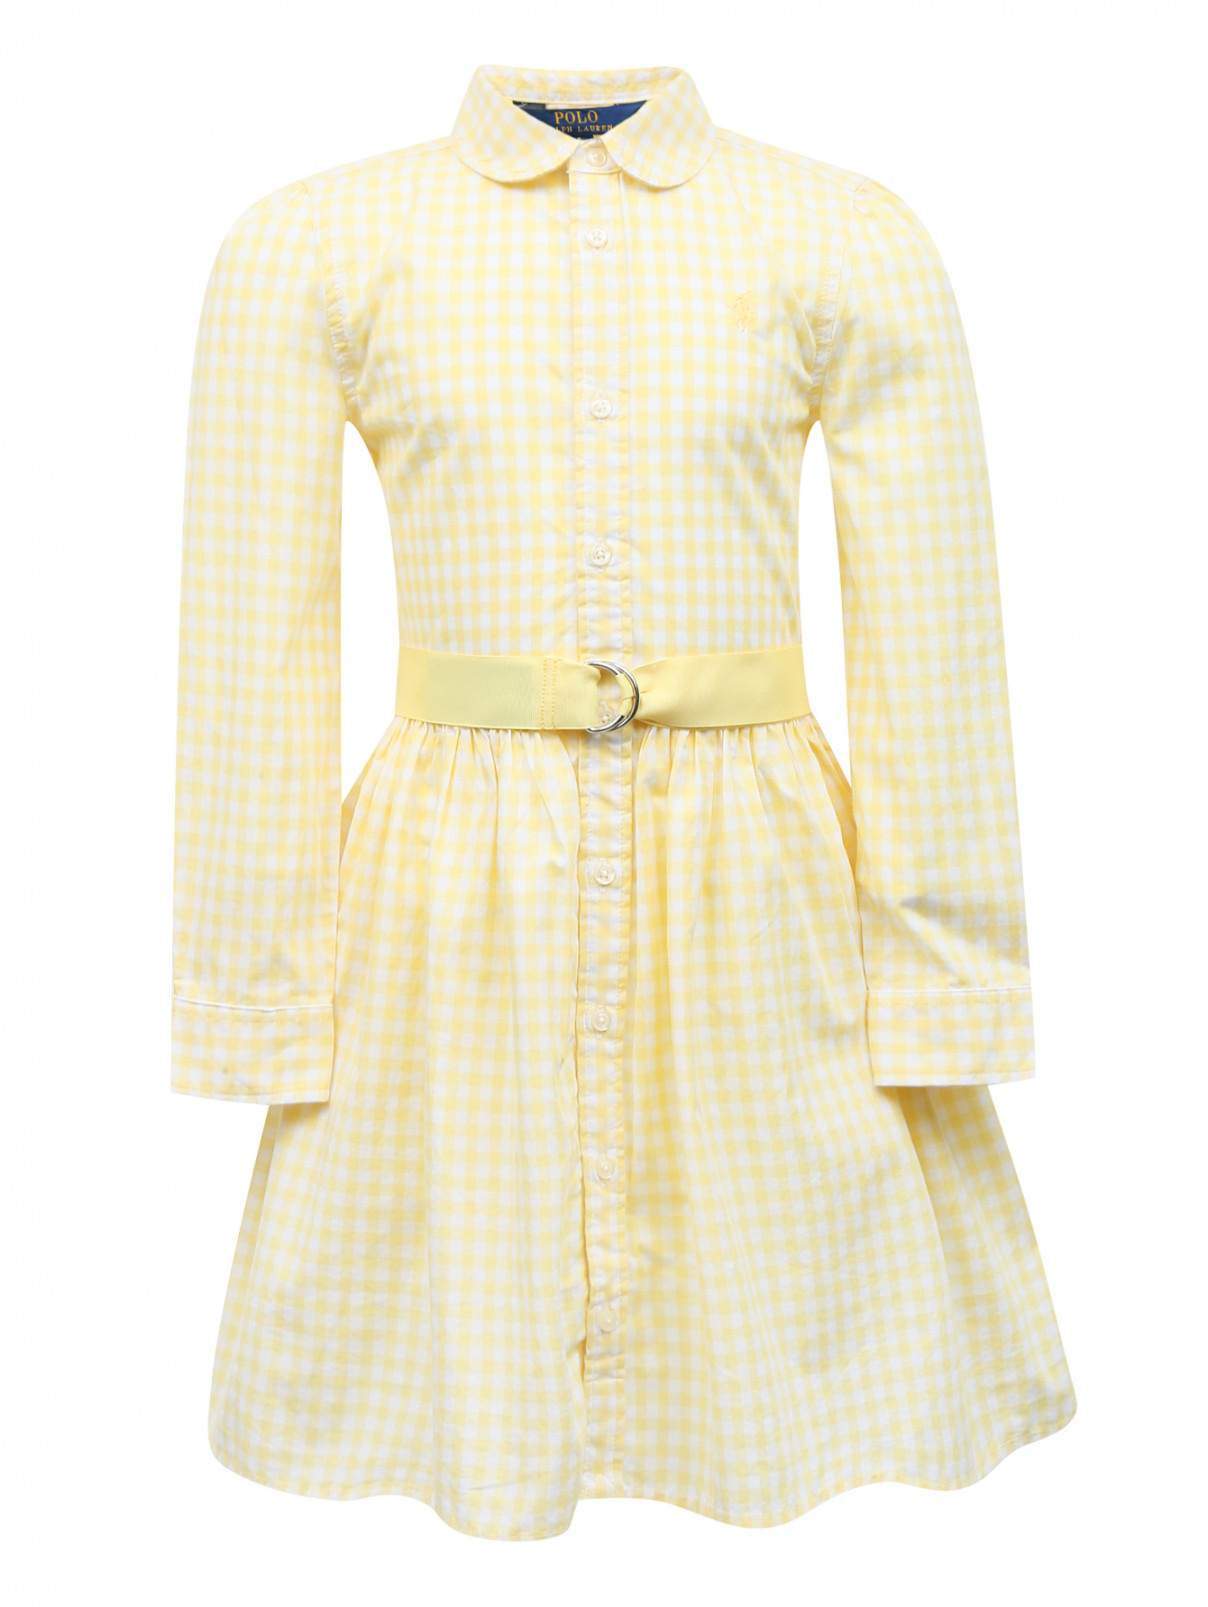 Платье из хлопка с узором "клетка" Ralph Lauren  –  Общий вид  – Цвет:  Желтый